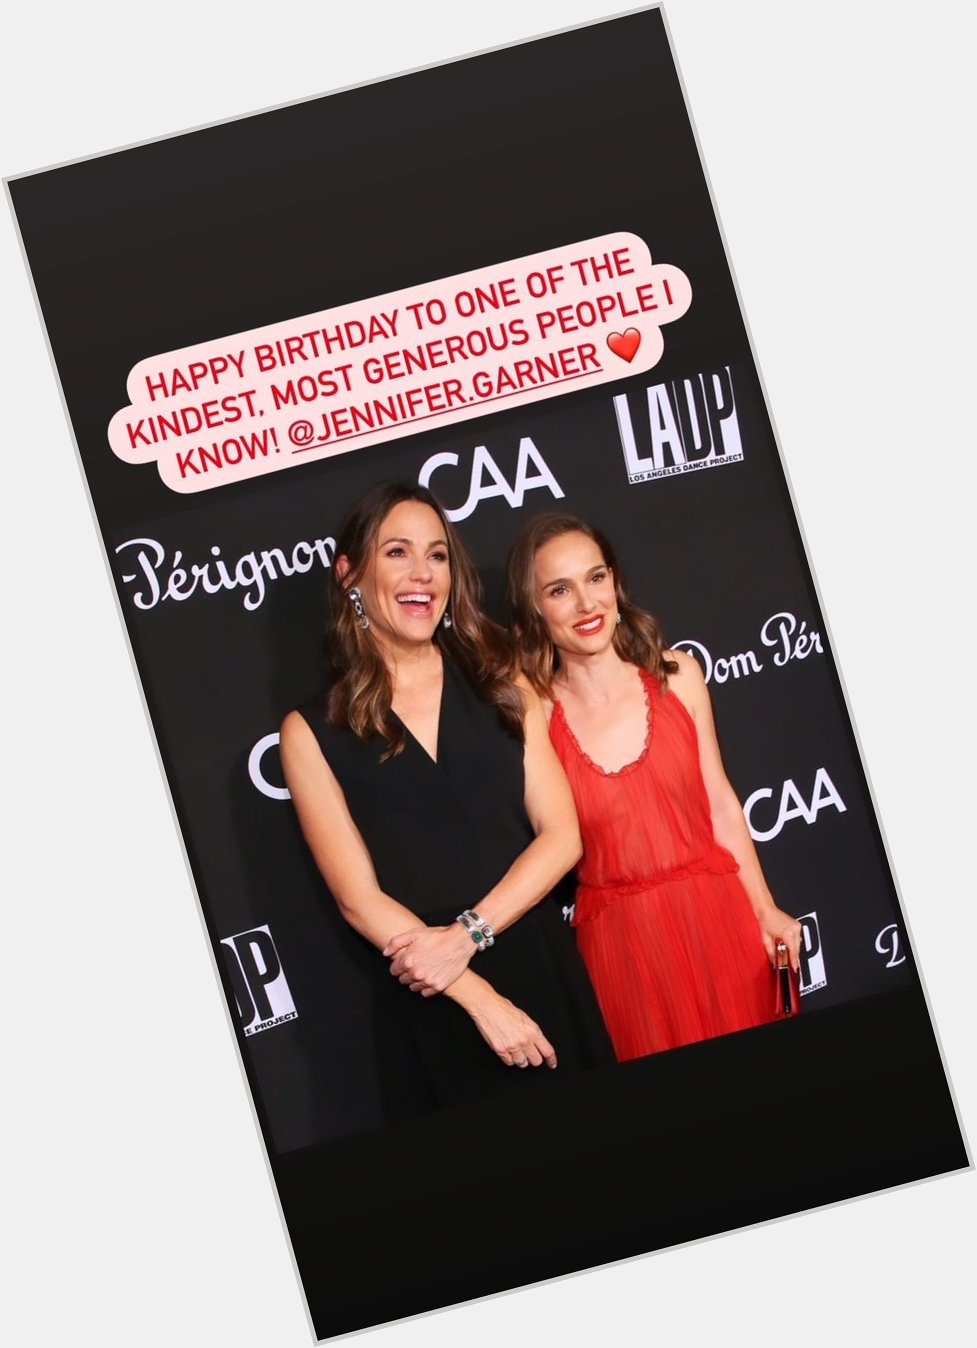  Natalie Portman via Instagram story wishing Jennifer Garner a happy birthday. 